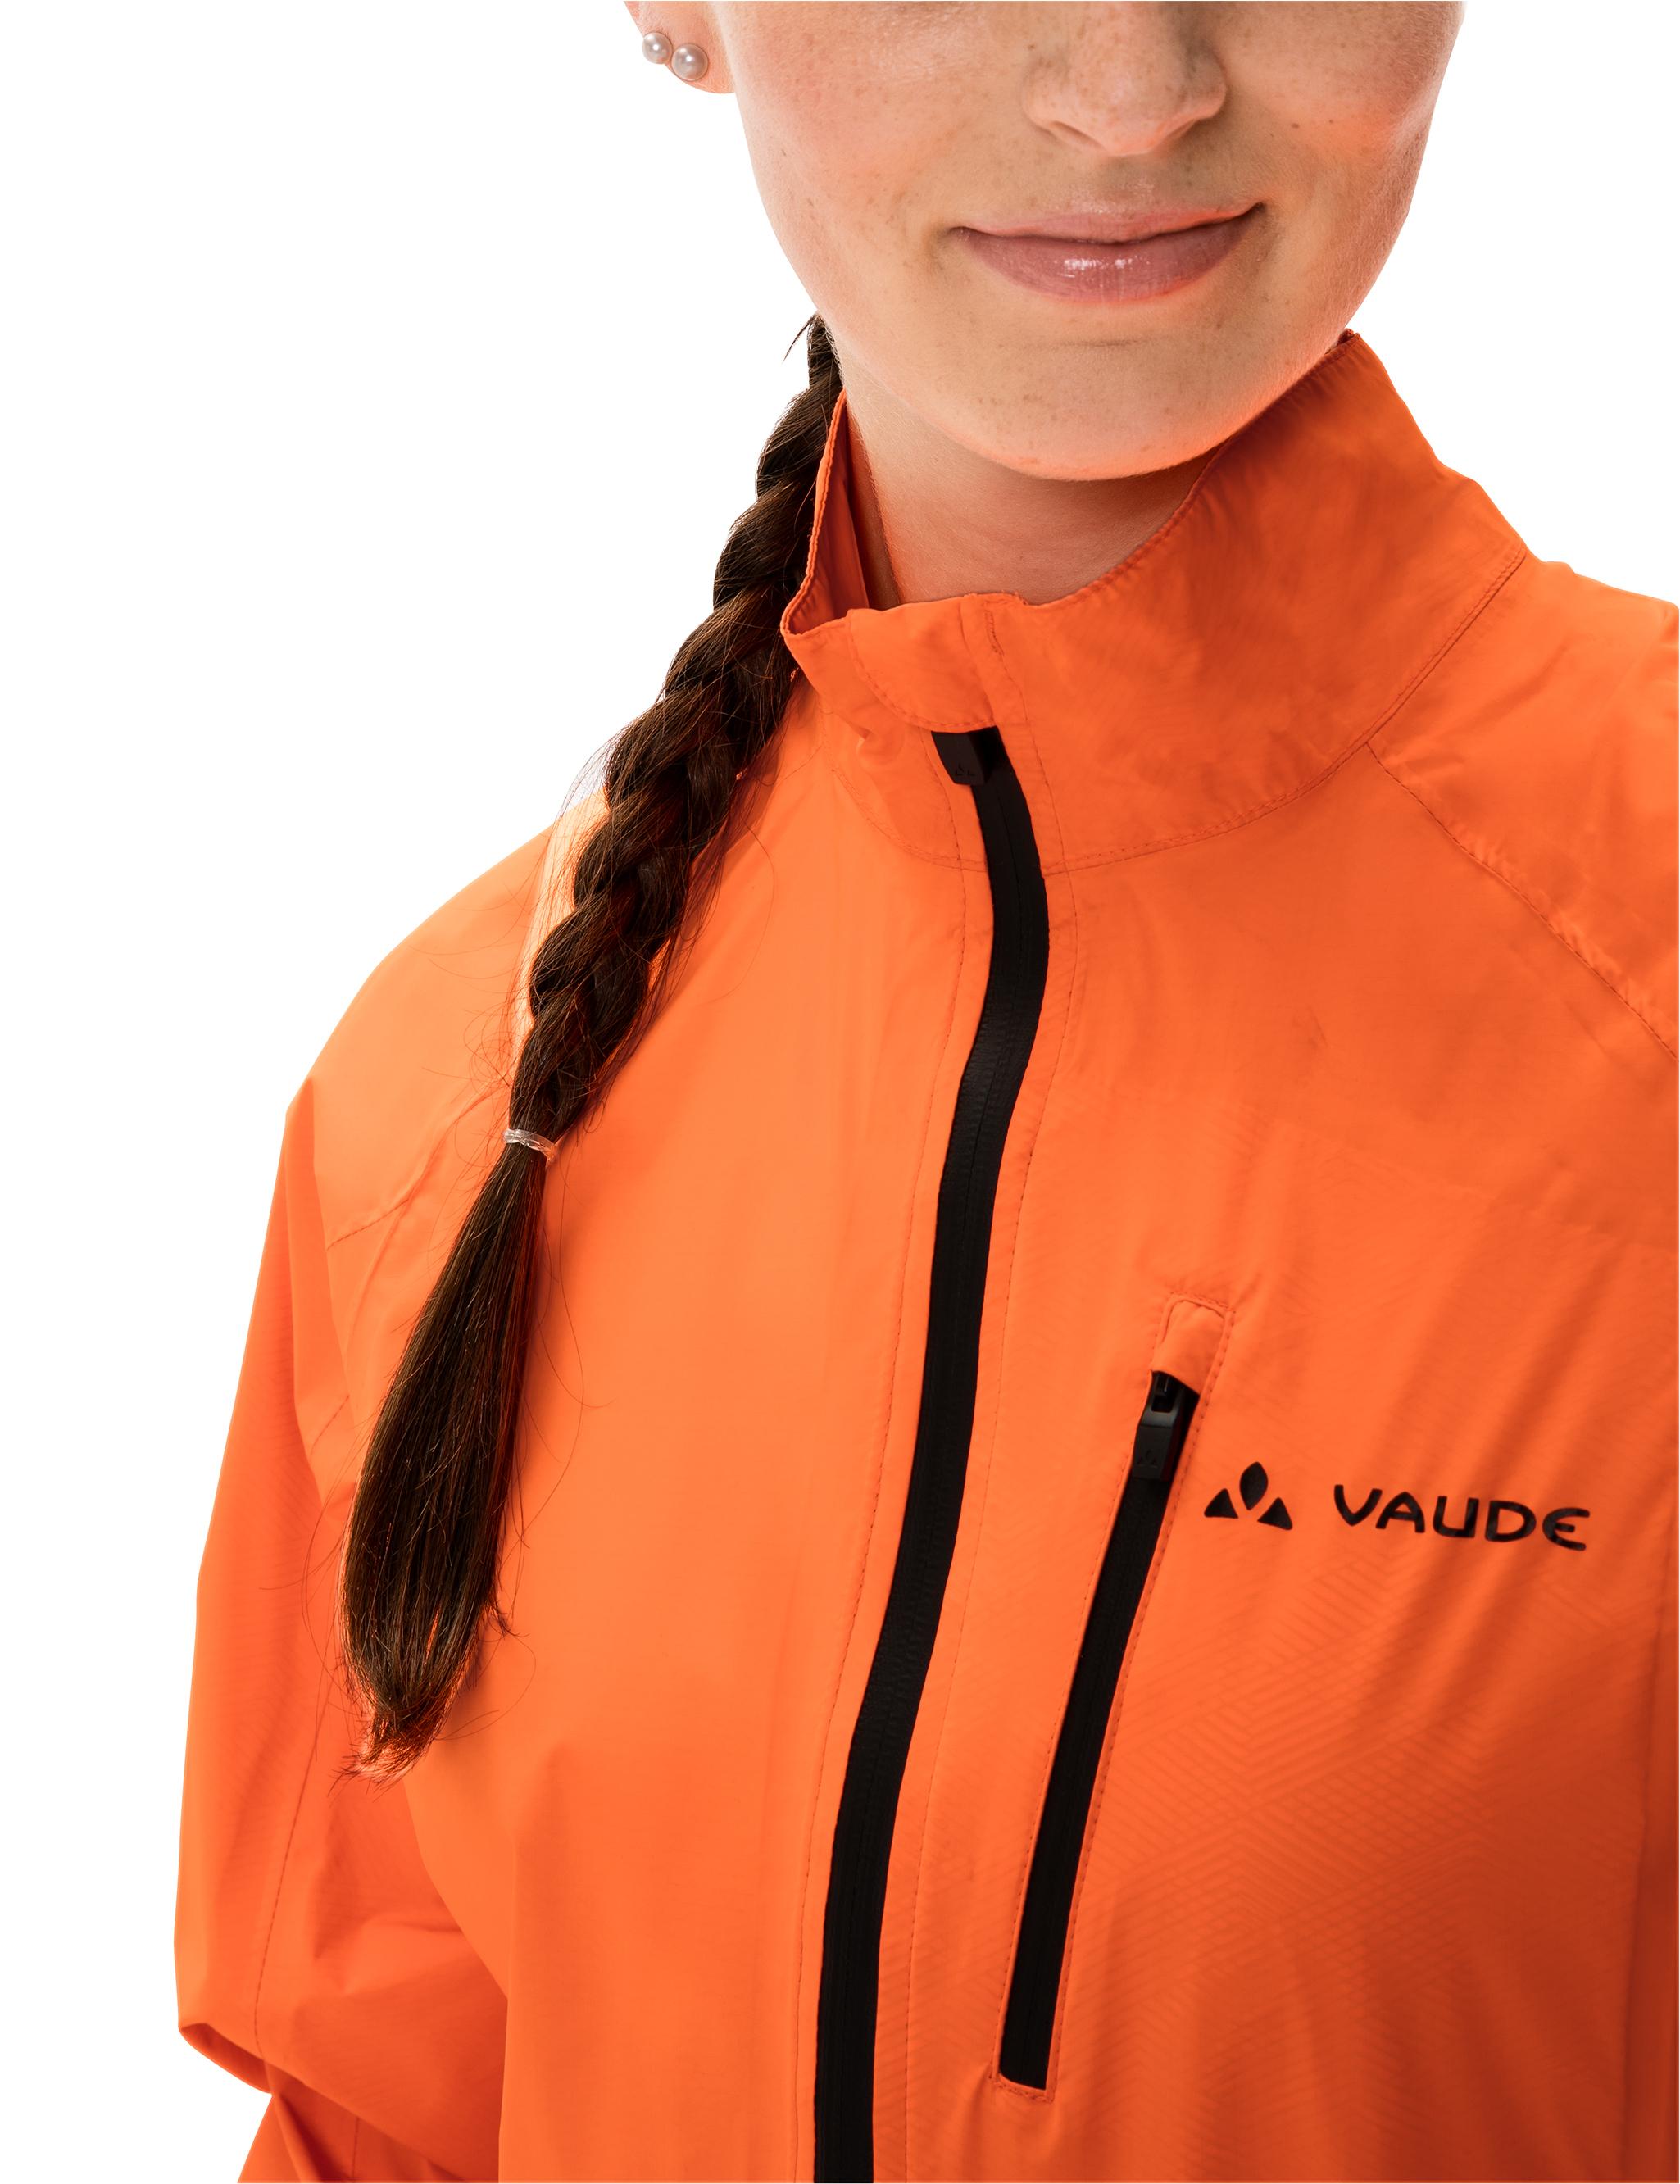 Damen Drop orange III SportScheck Fahrradjacke VAUDE Online neon Shop im kaufen von